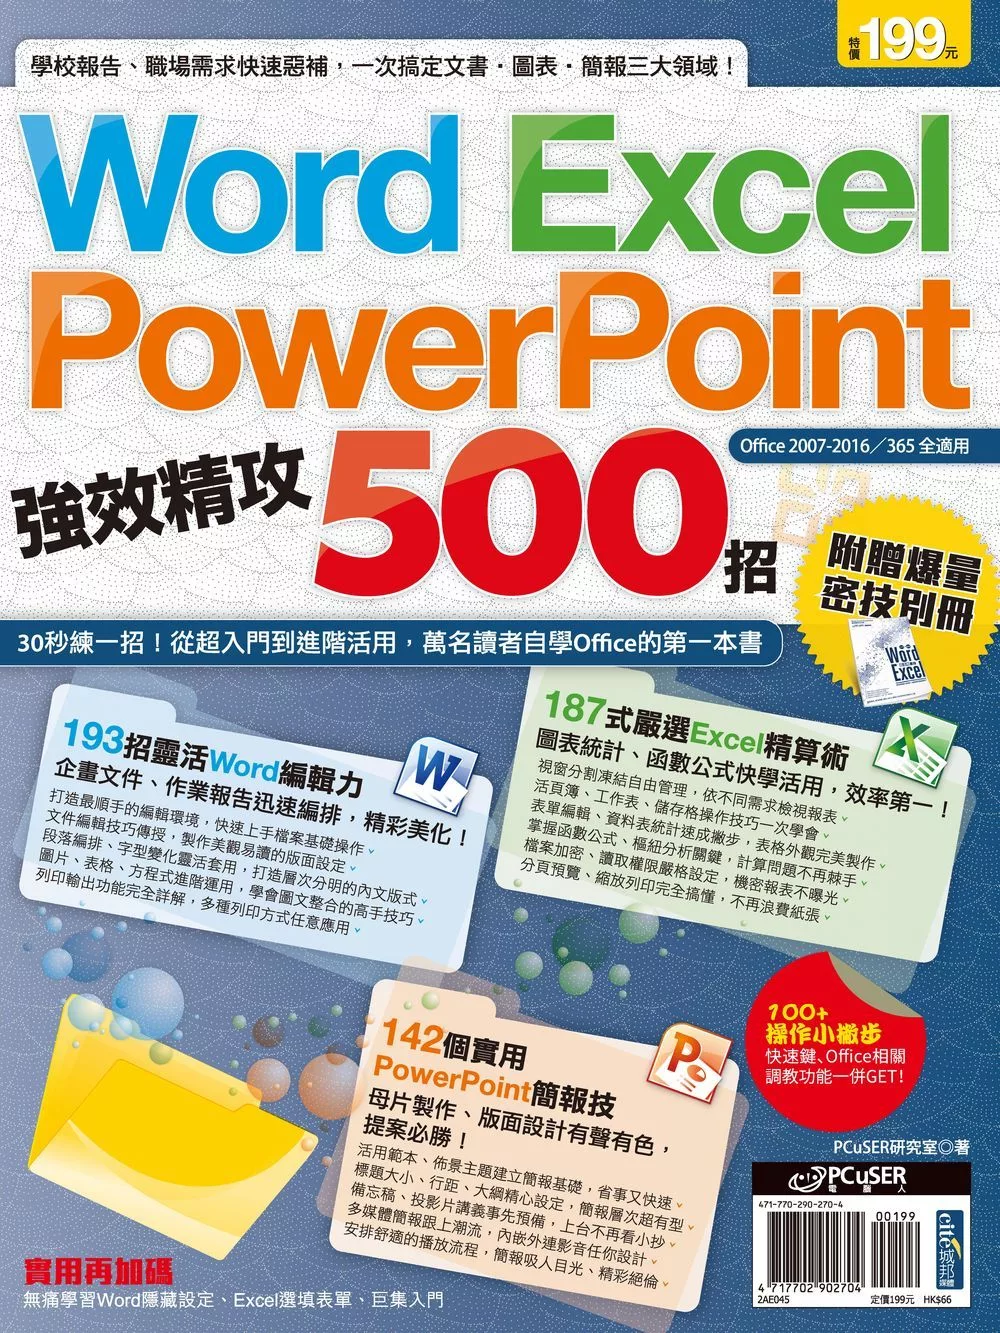 Word、Excel、PowerPoint 強效精攻500招 （附 贈爆量密技別冊） (電子書)